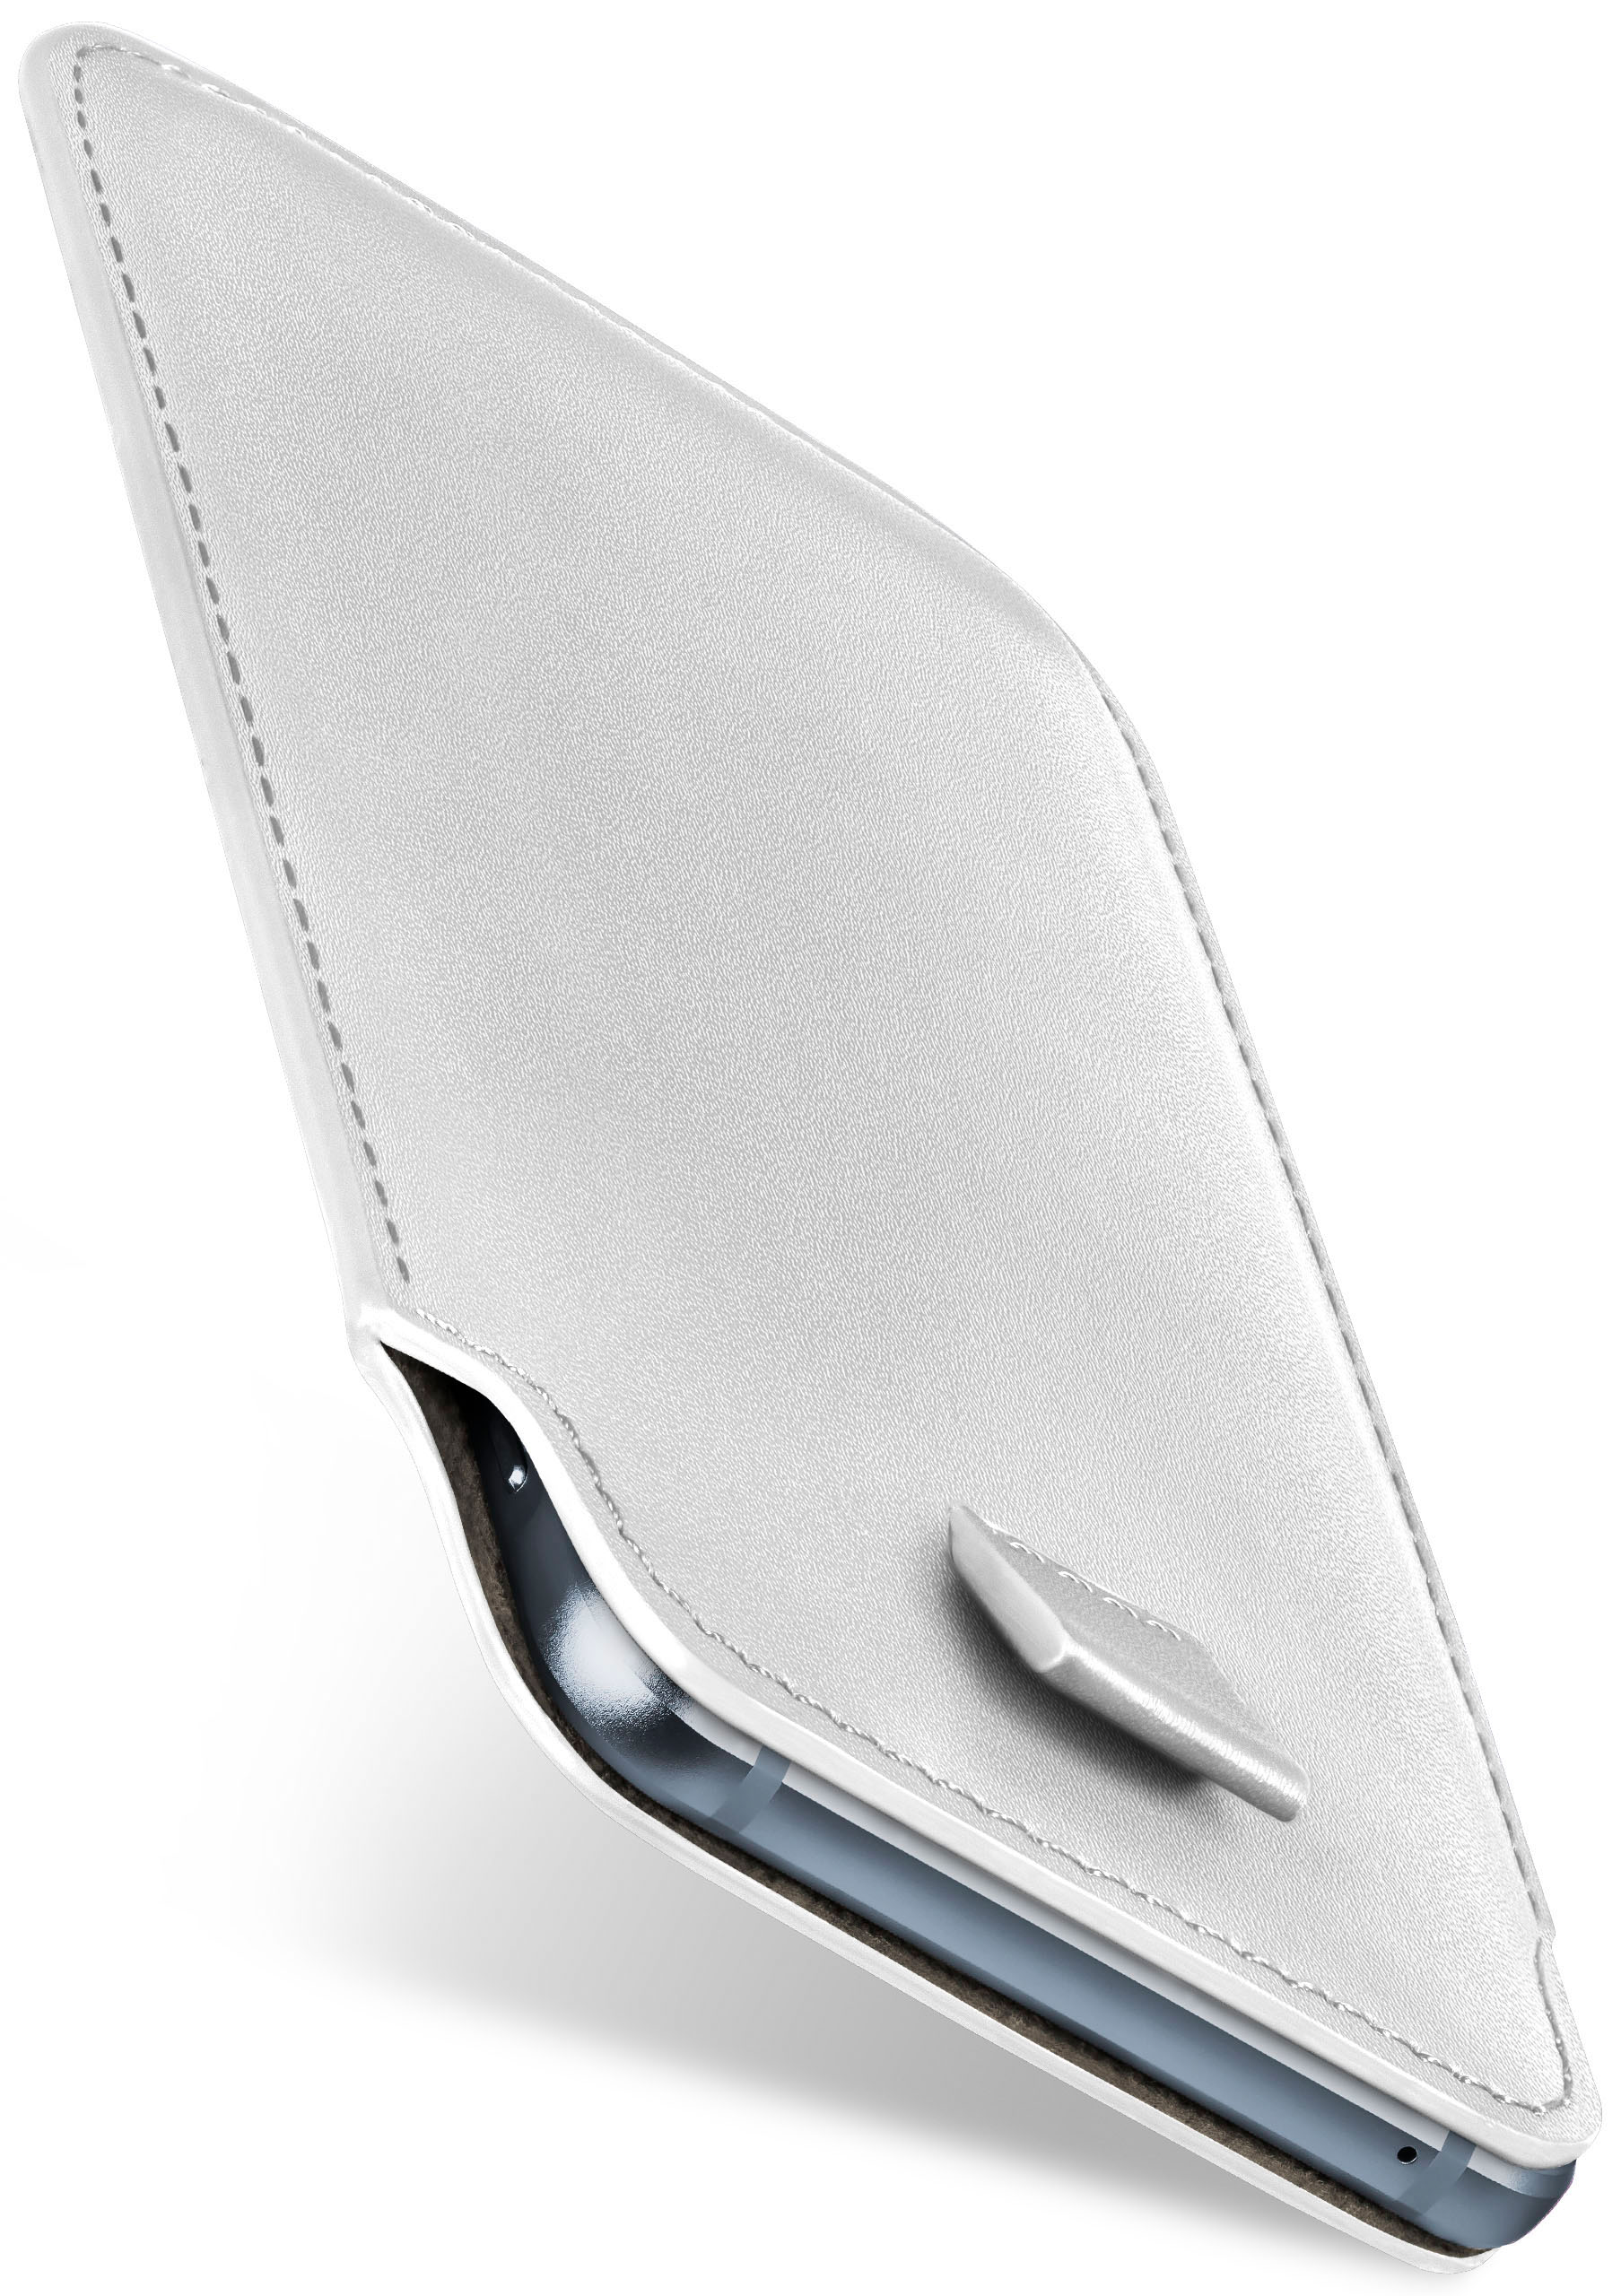 Case, Full Moto Lenovo, Slide Z Play, Shiny-White MOEX Cover,